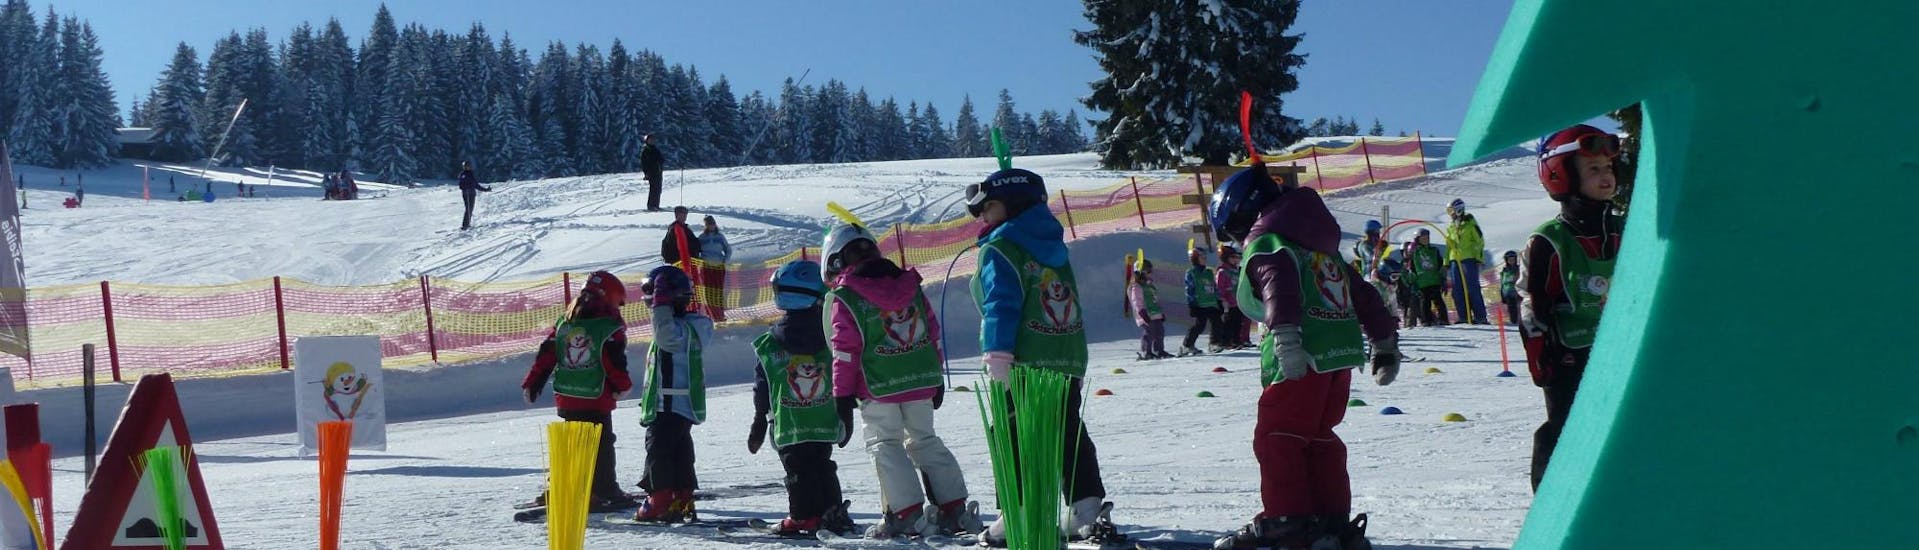 Im Kinderland der Skischule Steibis machen die Teilnehmer am Kinder Skikurs (4-15 Jahre) - Vormittag - Anfänger ihre ersten Erfahrungen auf Skiern.